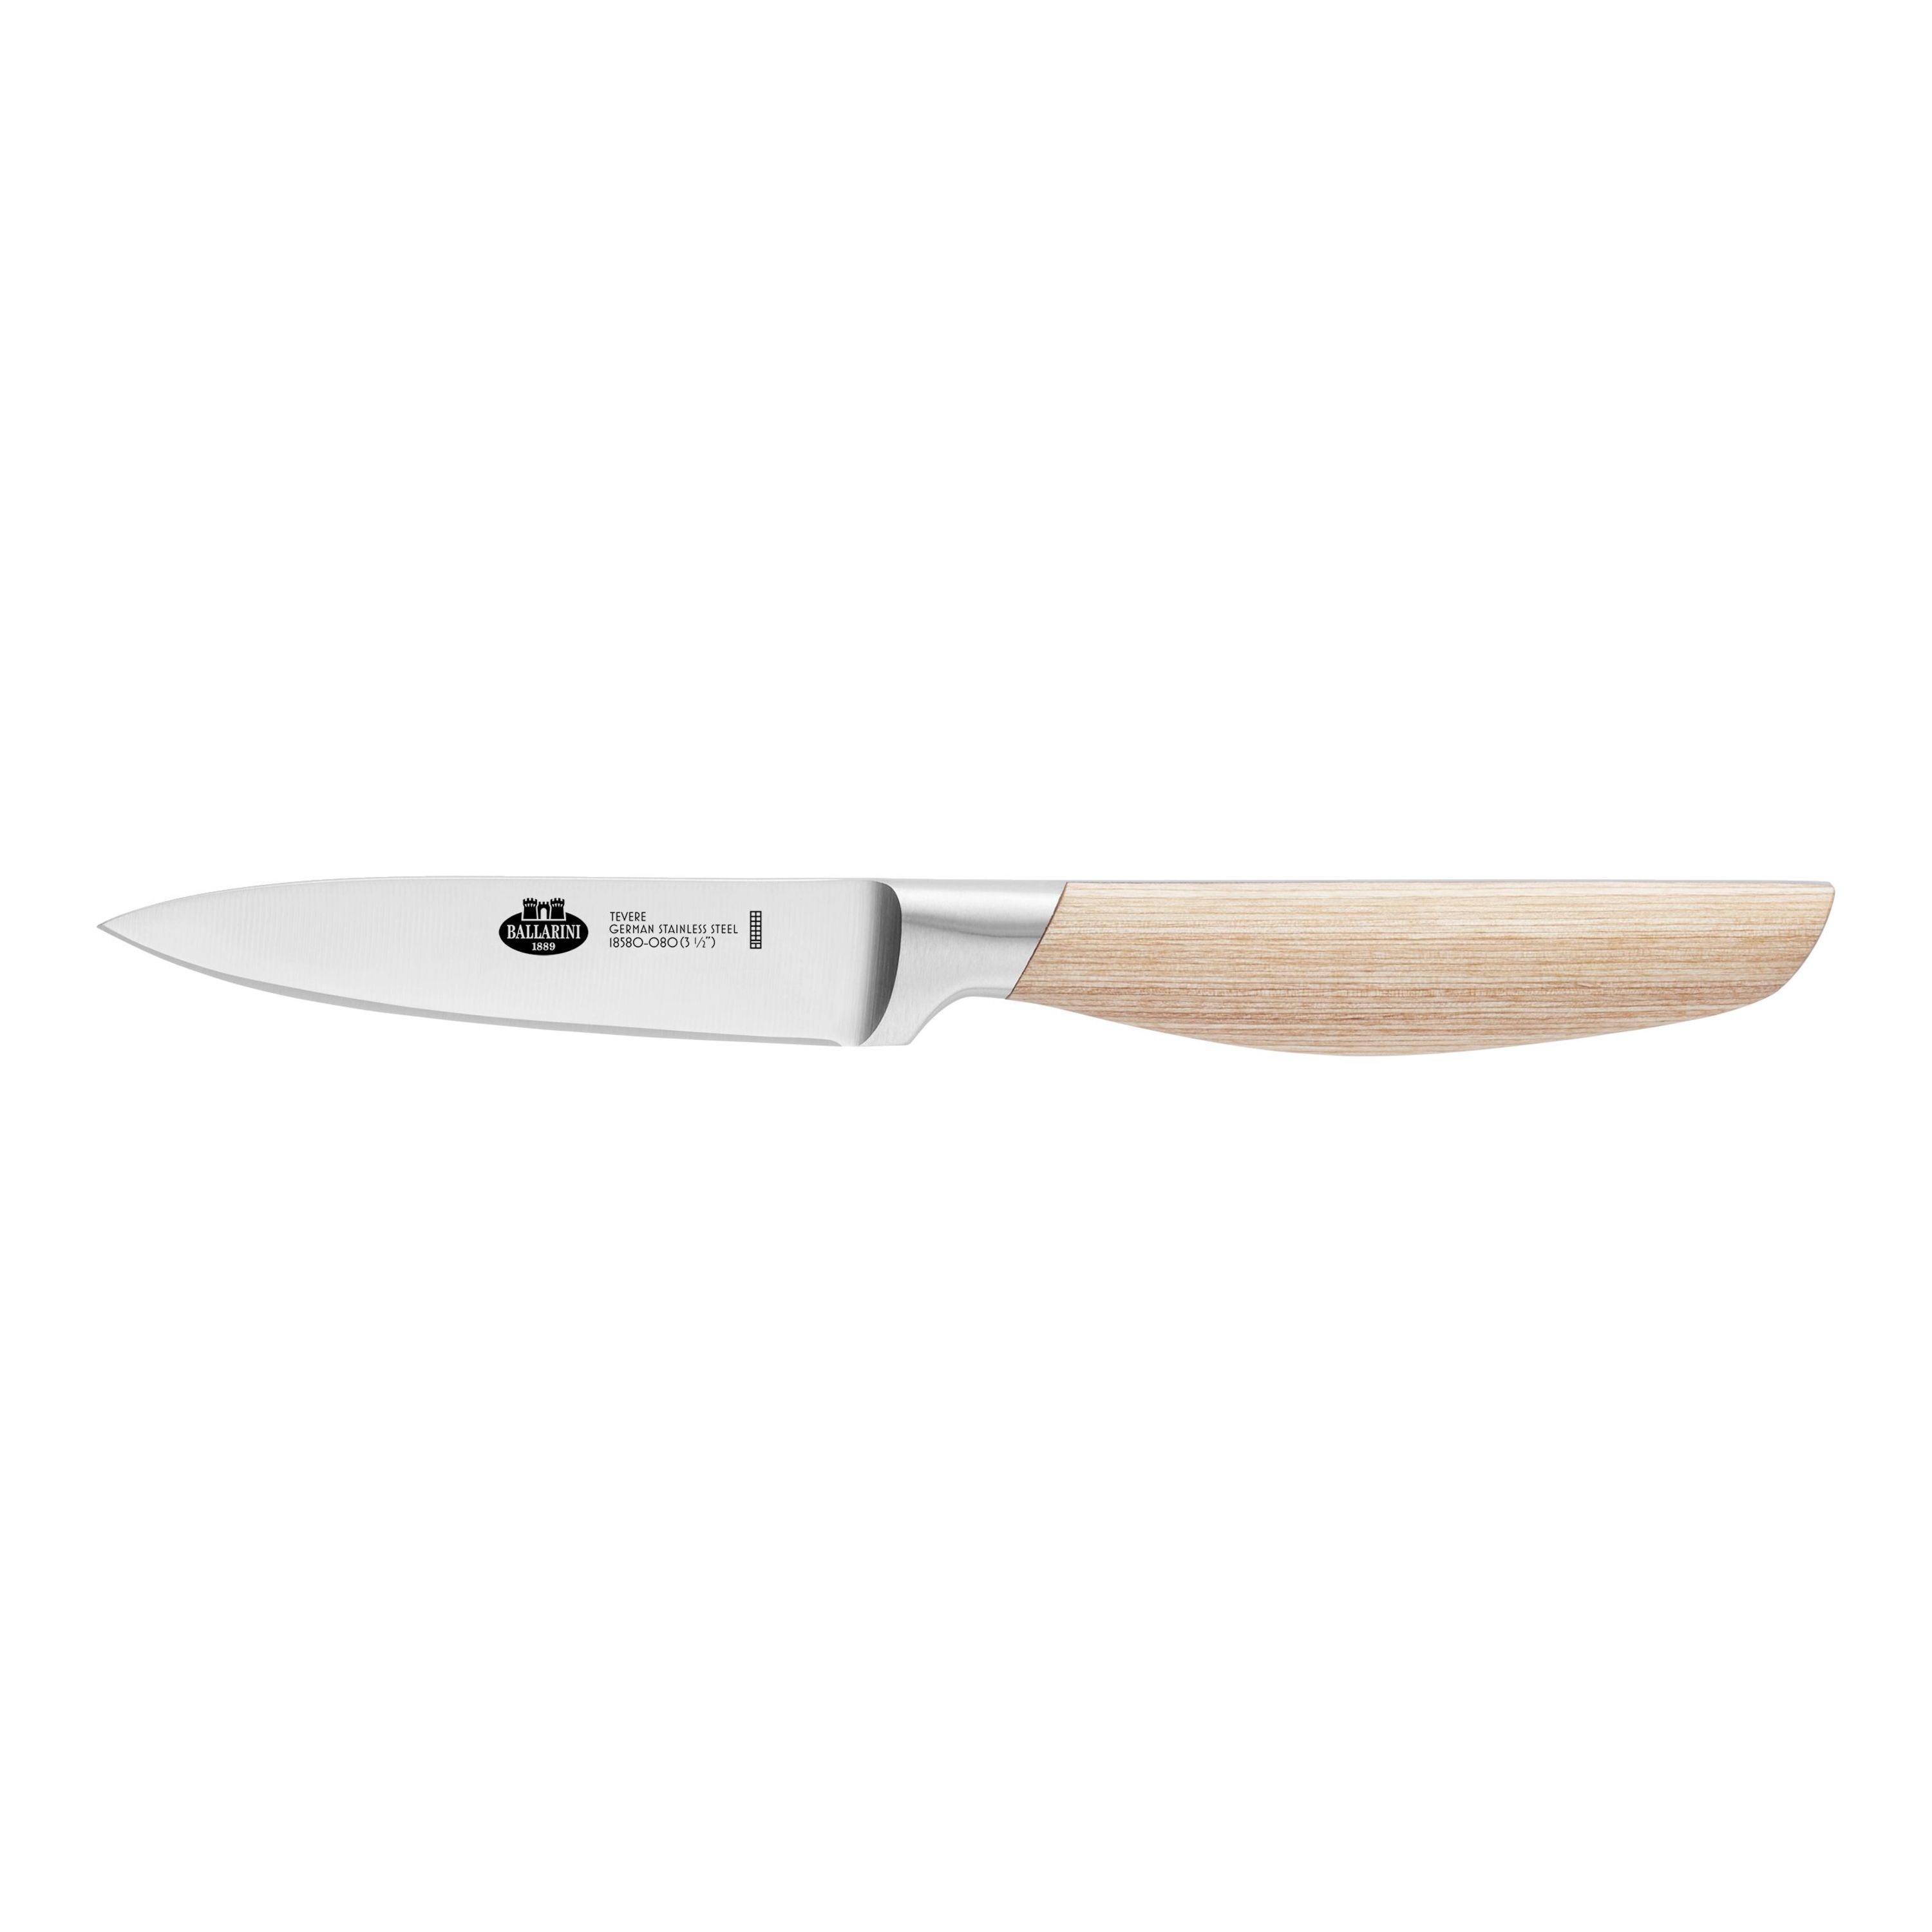 BALLARINI Tevere Couteau à larder et garnir 9 cm, Nature, Bois de pakka